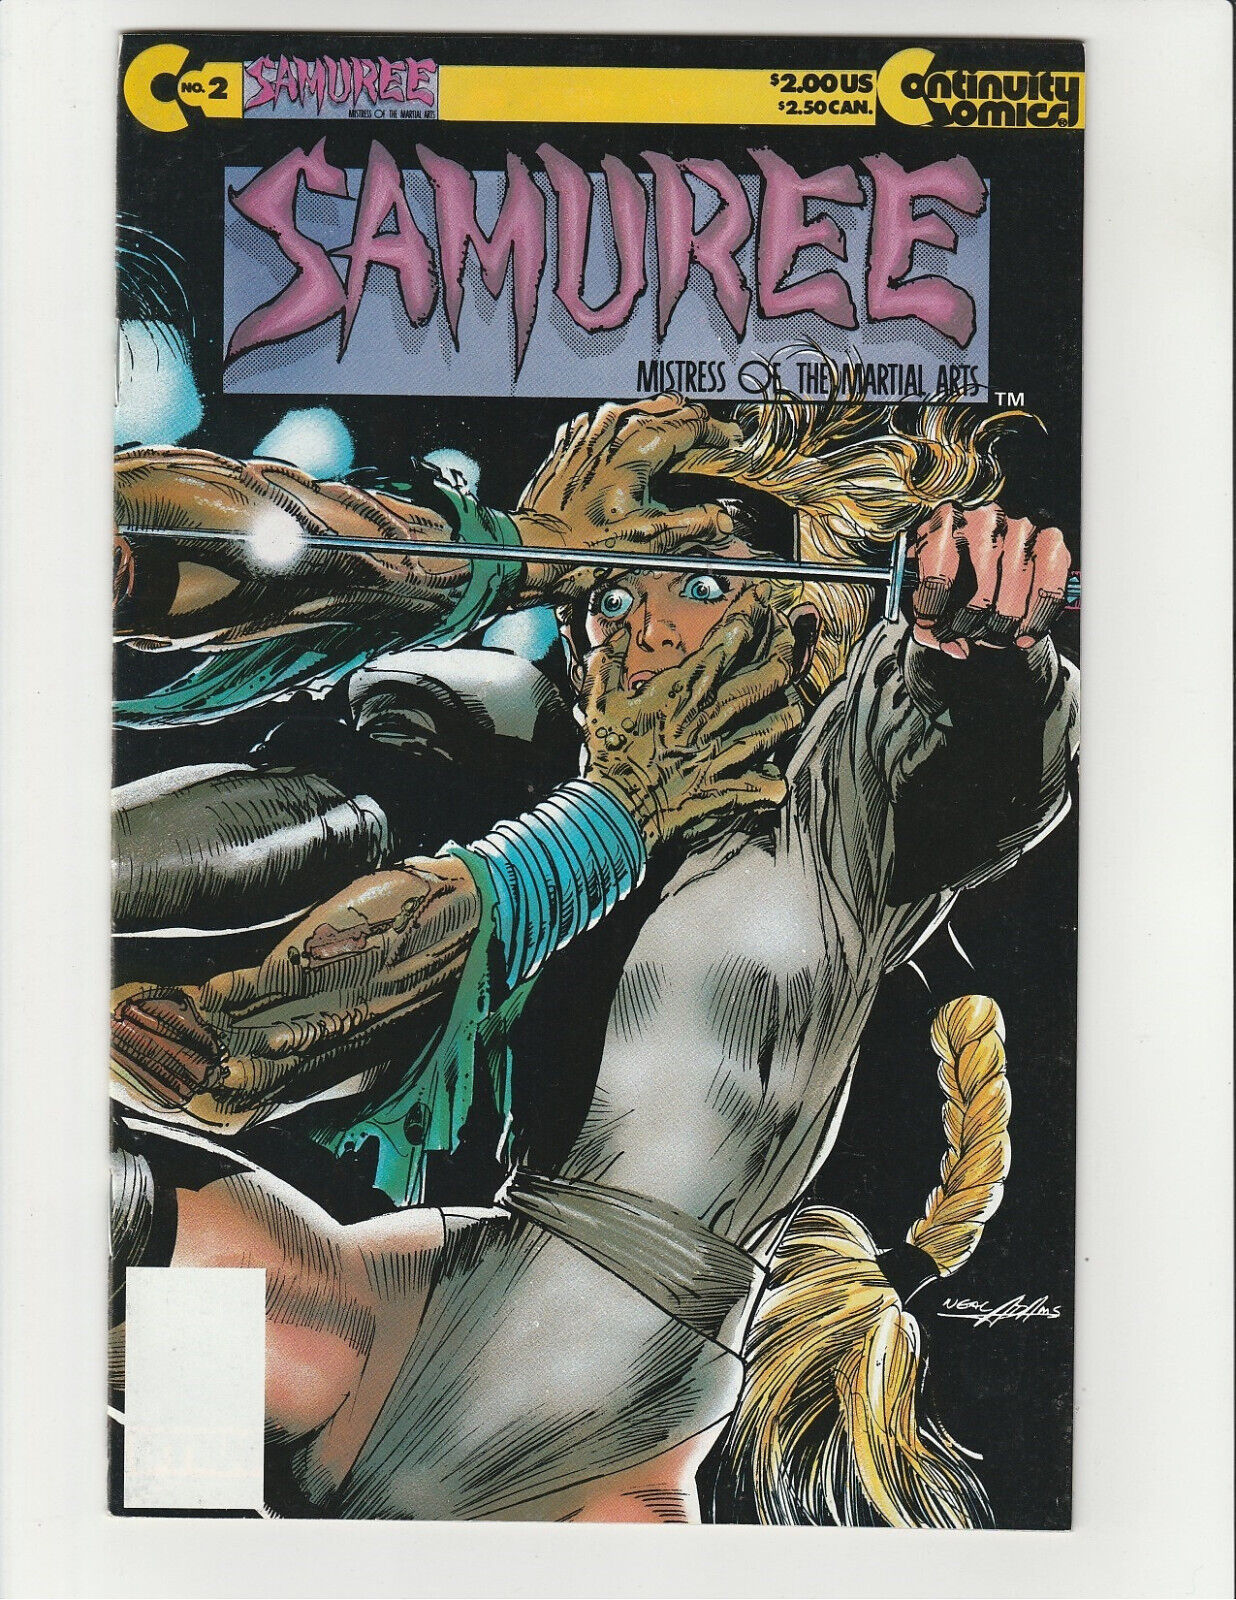 Samuree #2 (1987 Series) Continuity Comics Neal Adams Wraparound Cover (9.0)